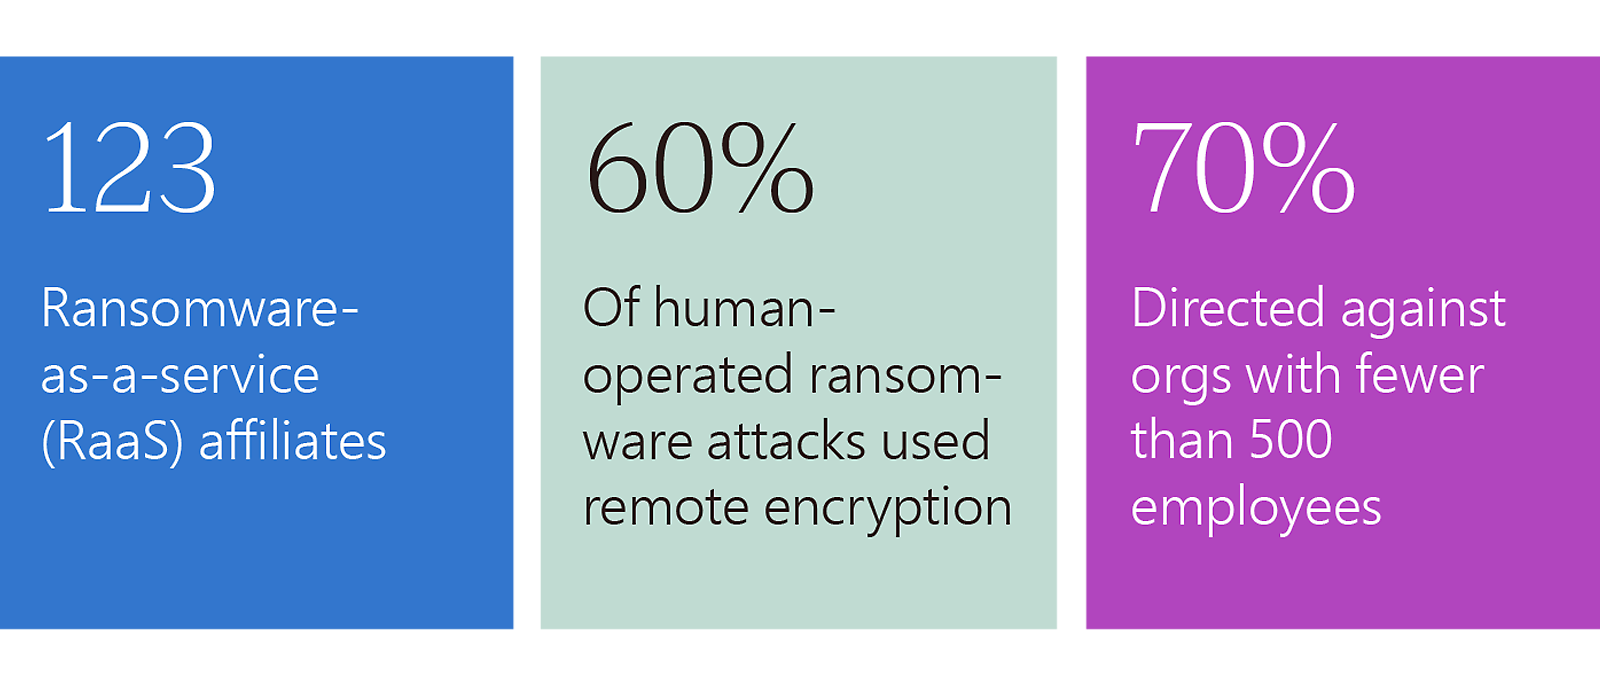 Estadísticas de ransomware: 123 afiliados a RaaS, el 60 % usa encriptación remota, el 70 % se dirige a <500 empleados